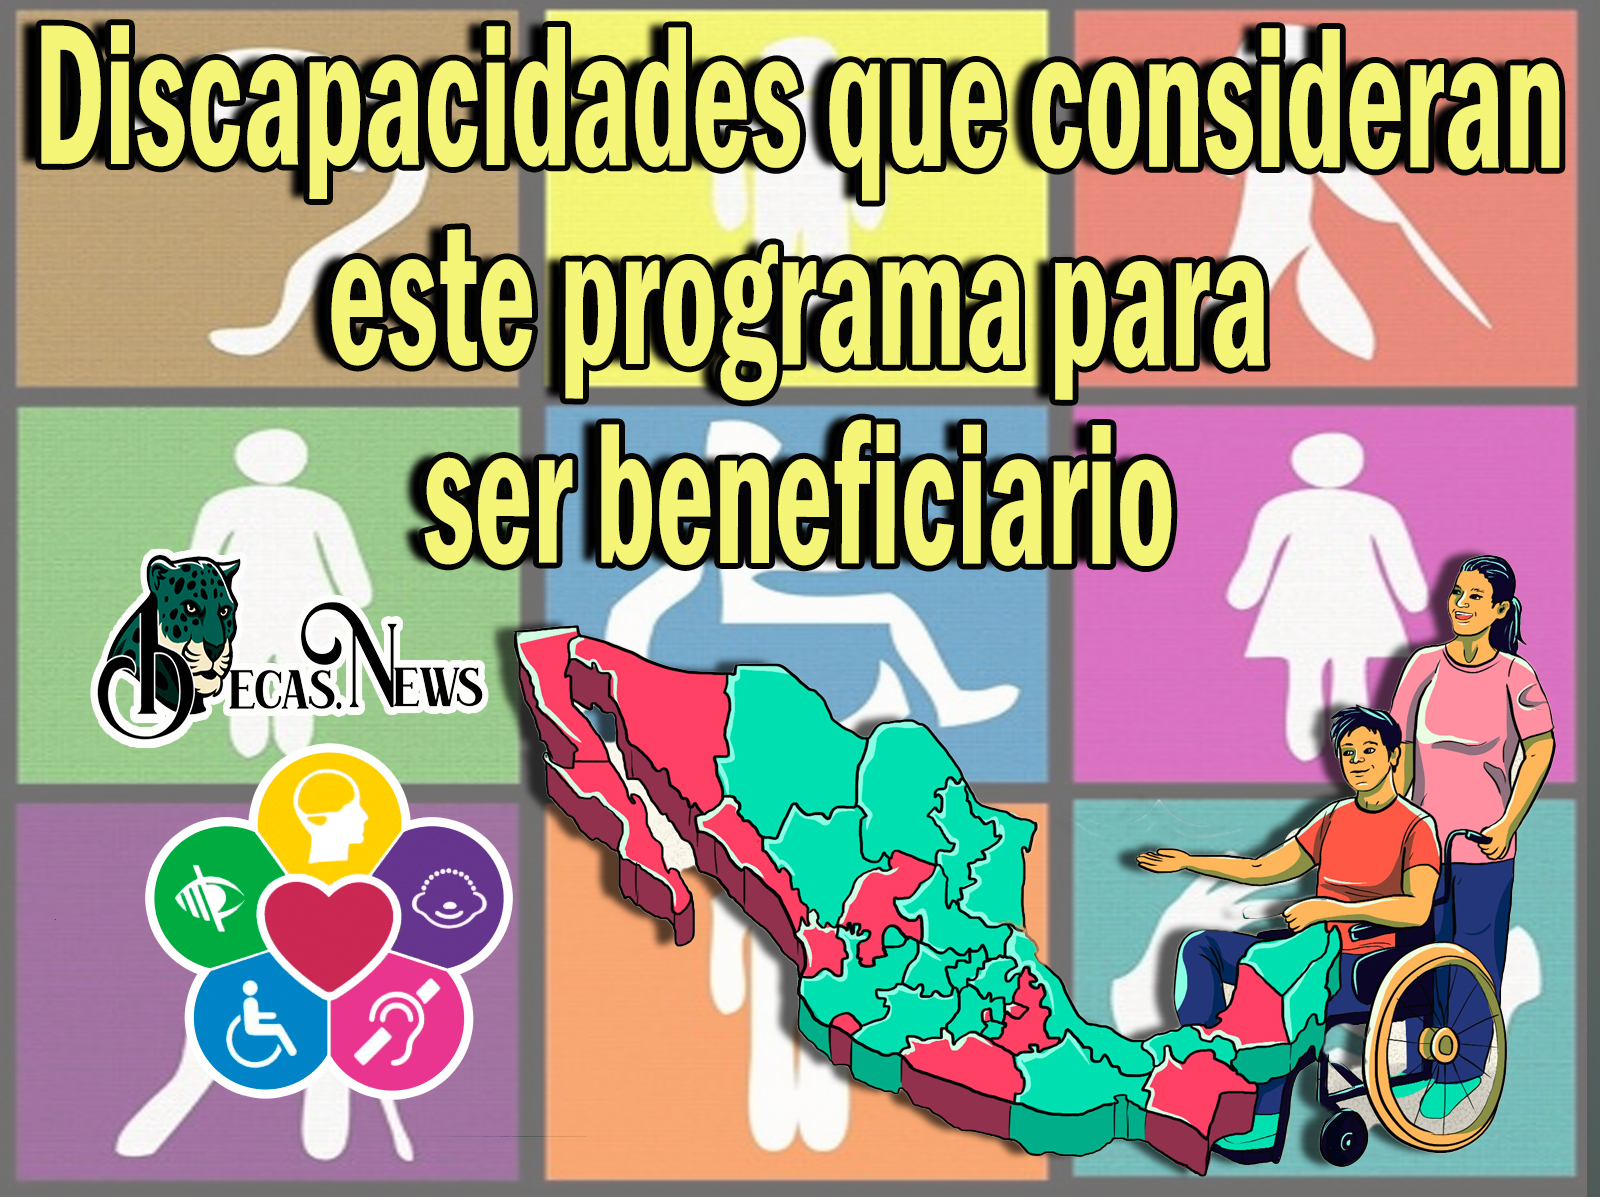 Pensión para Personas con Discapacidad: Discapacidades que consideran este programa para ser beneficiario